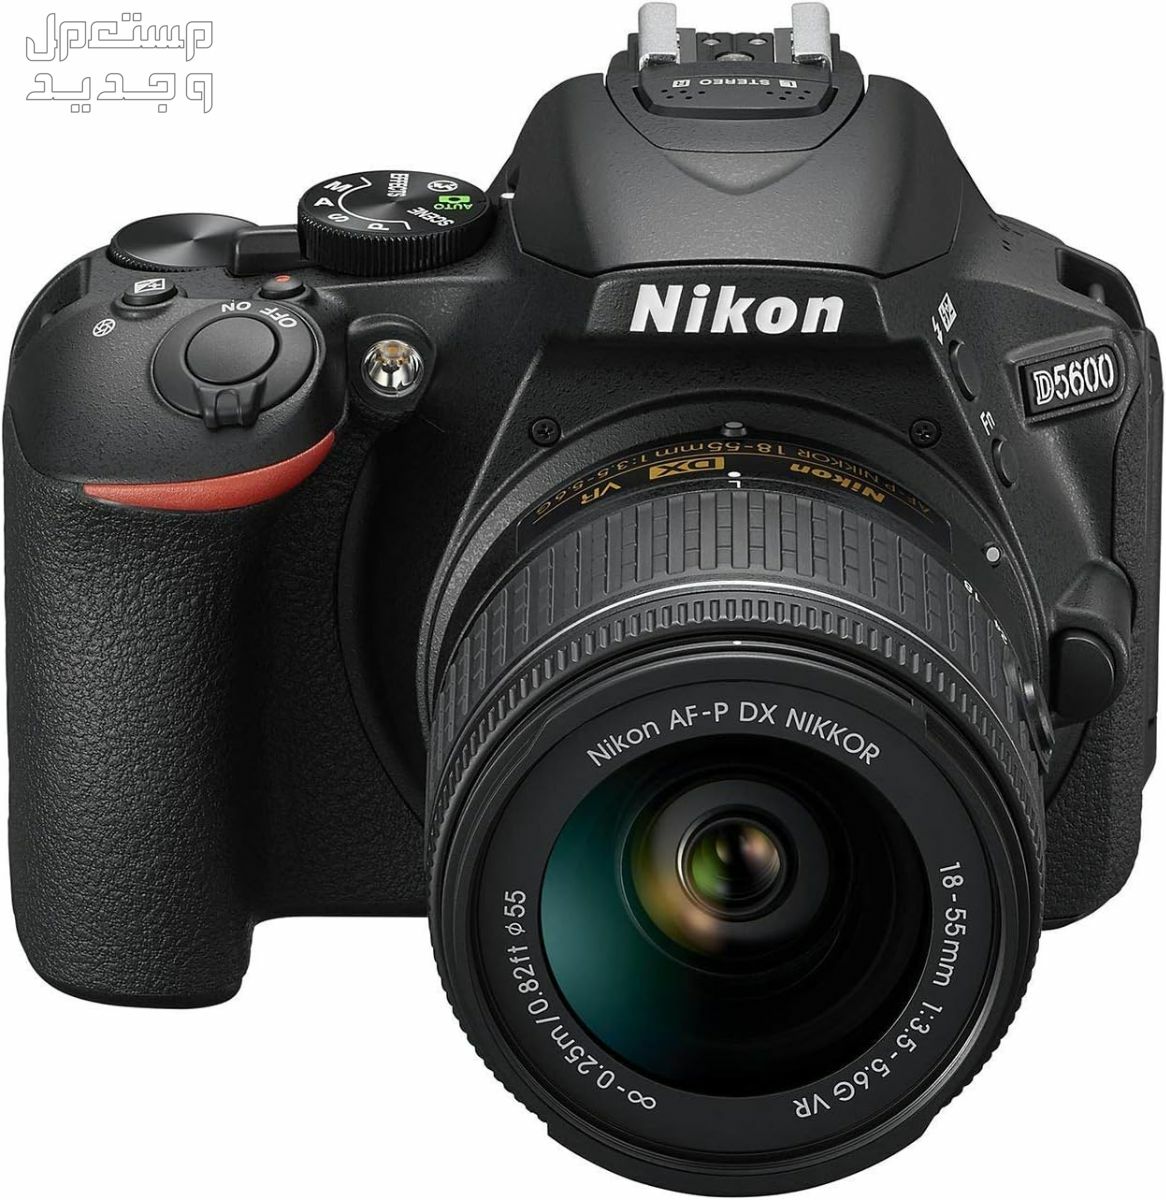 10 كاميرات تصوير ماركات عالمية بأسعار رخيصة في الأردن سعر كاميرا Nikon D5600